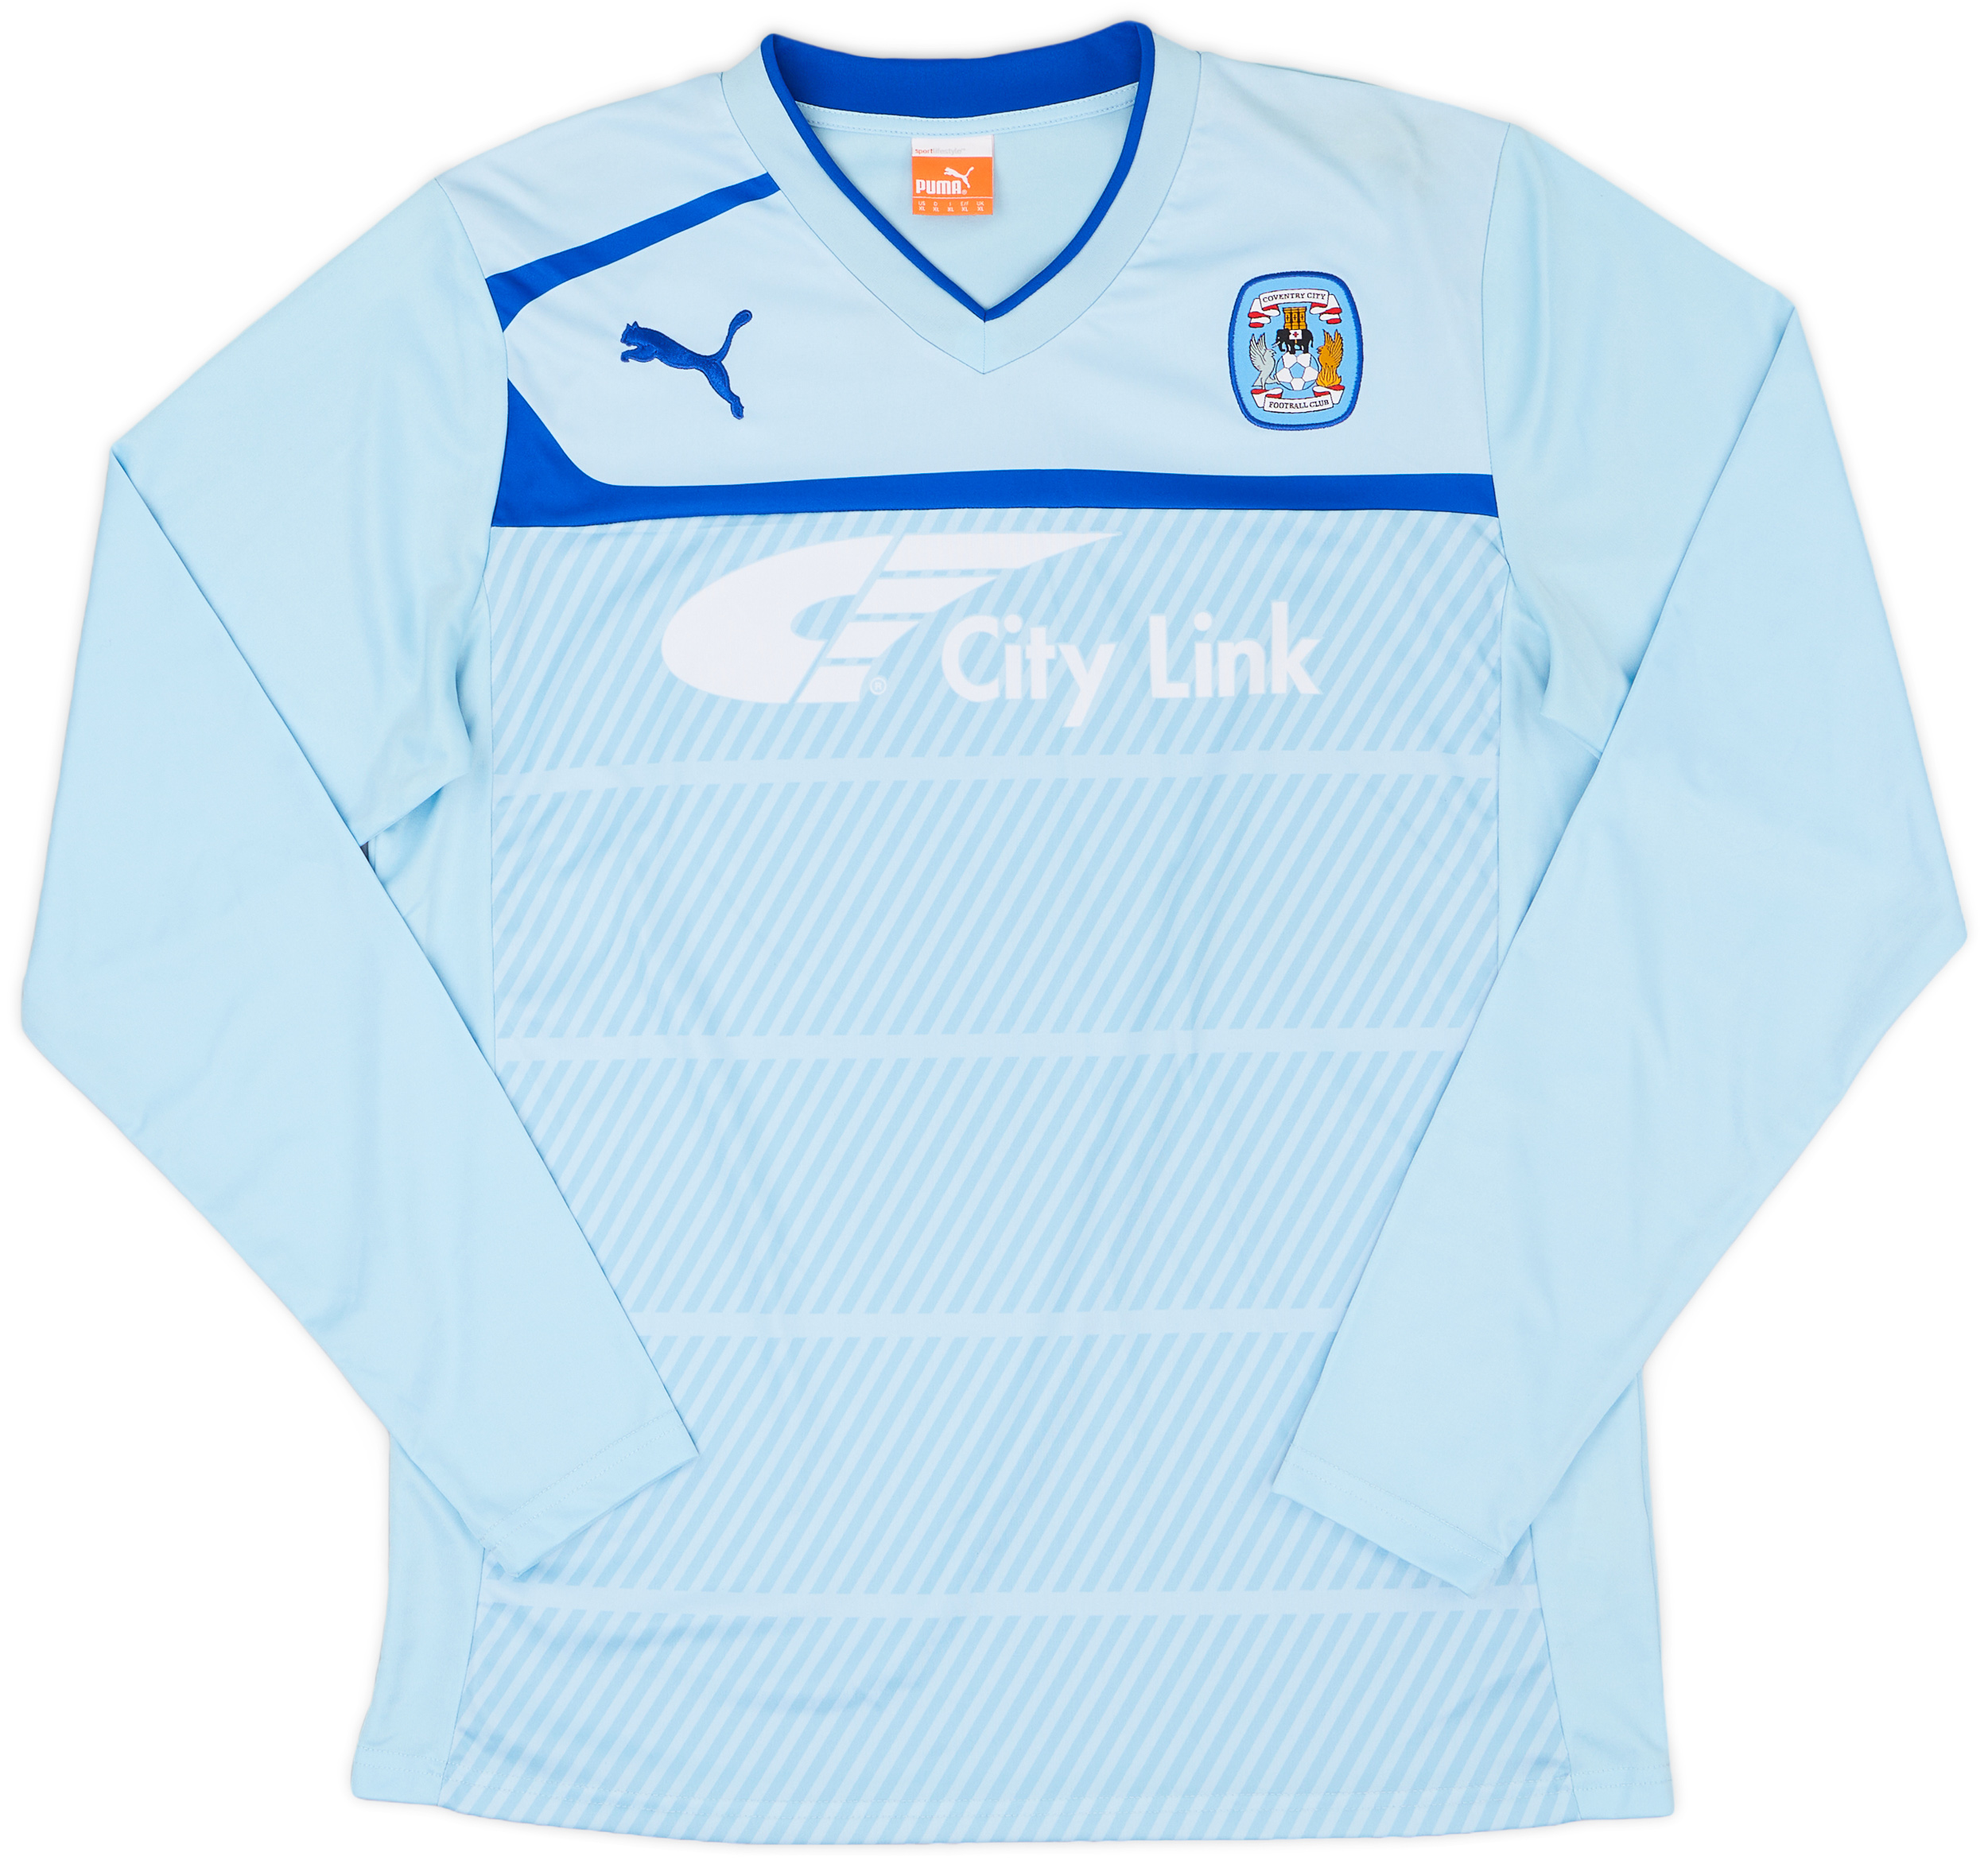 Coventry City  home футболка (Original)